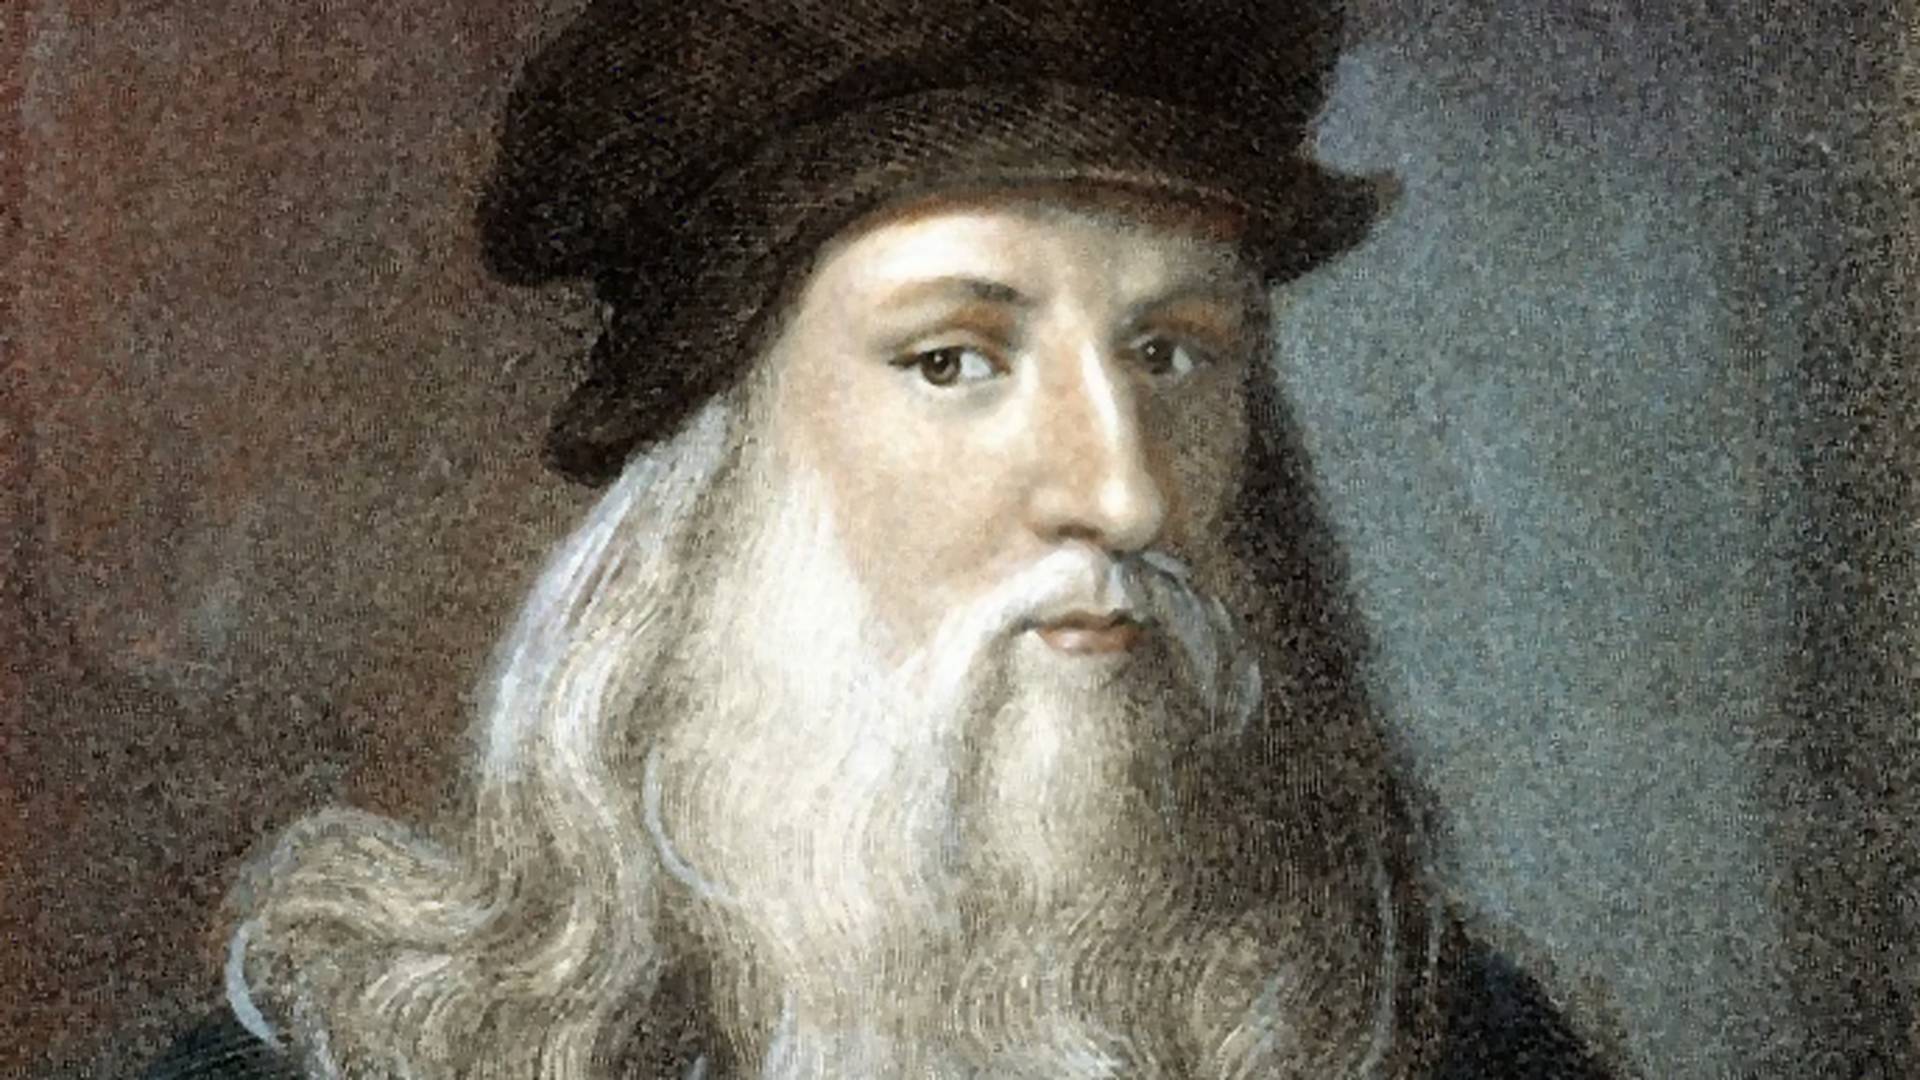 "Da Vinci vegetáriánus volt, balkezes és meleg." - sorozatot forgatnak az életéből